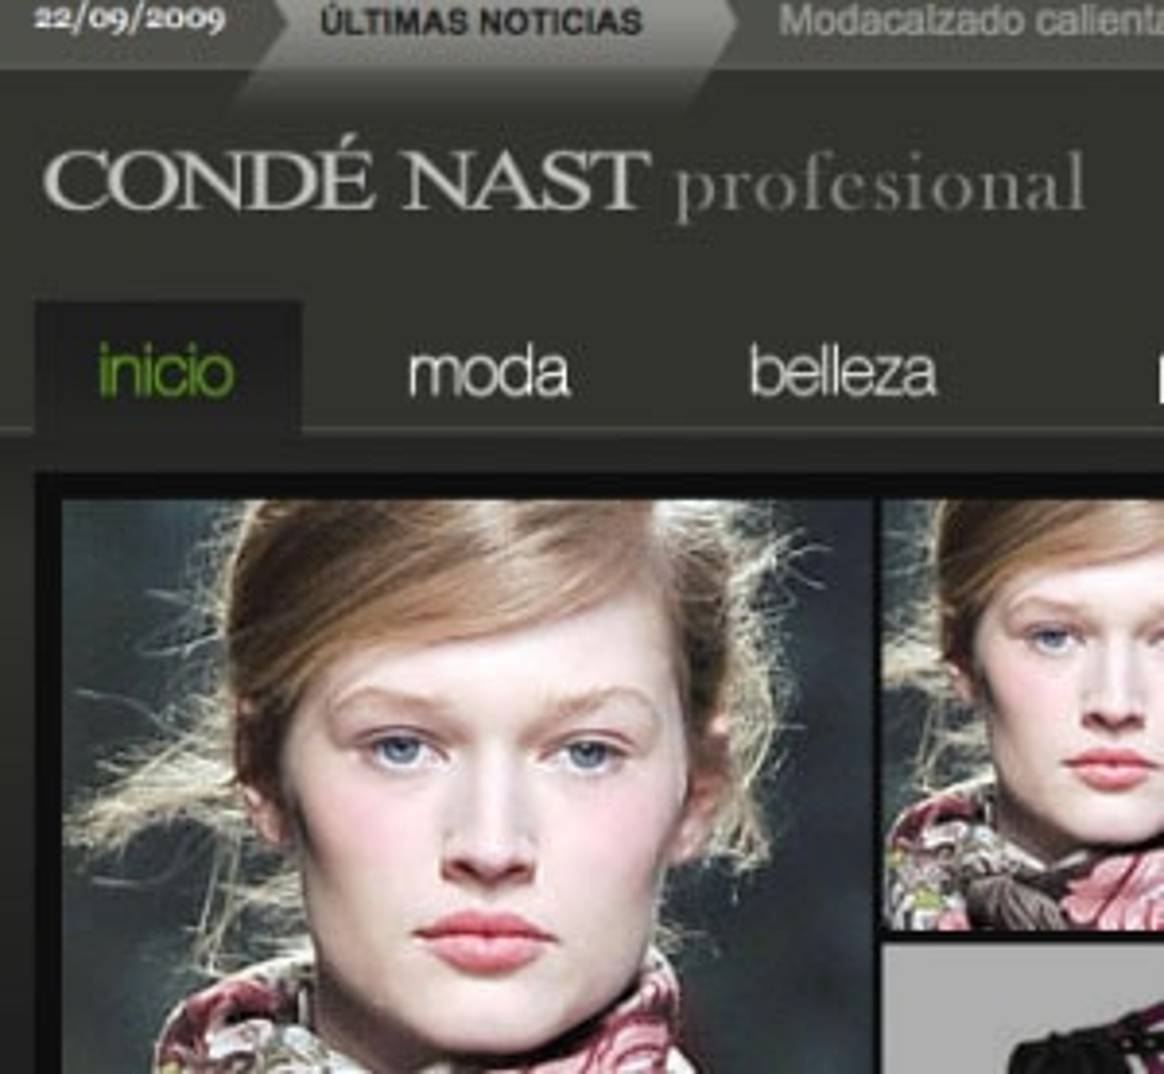 Condé Nast: revistas profesionales online